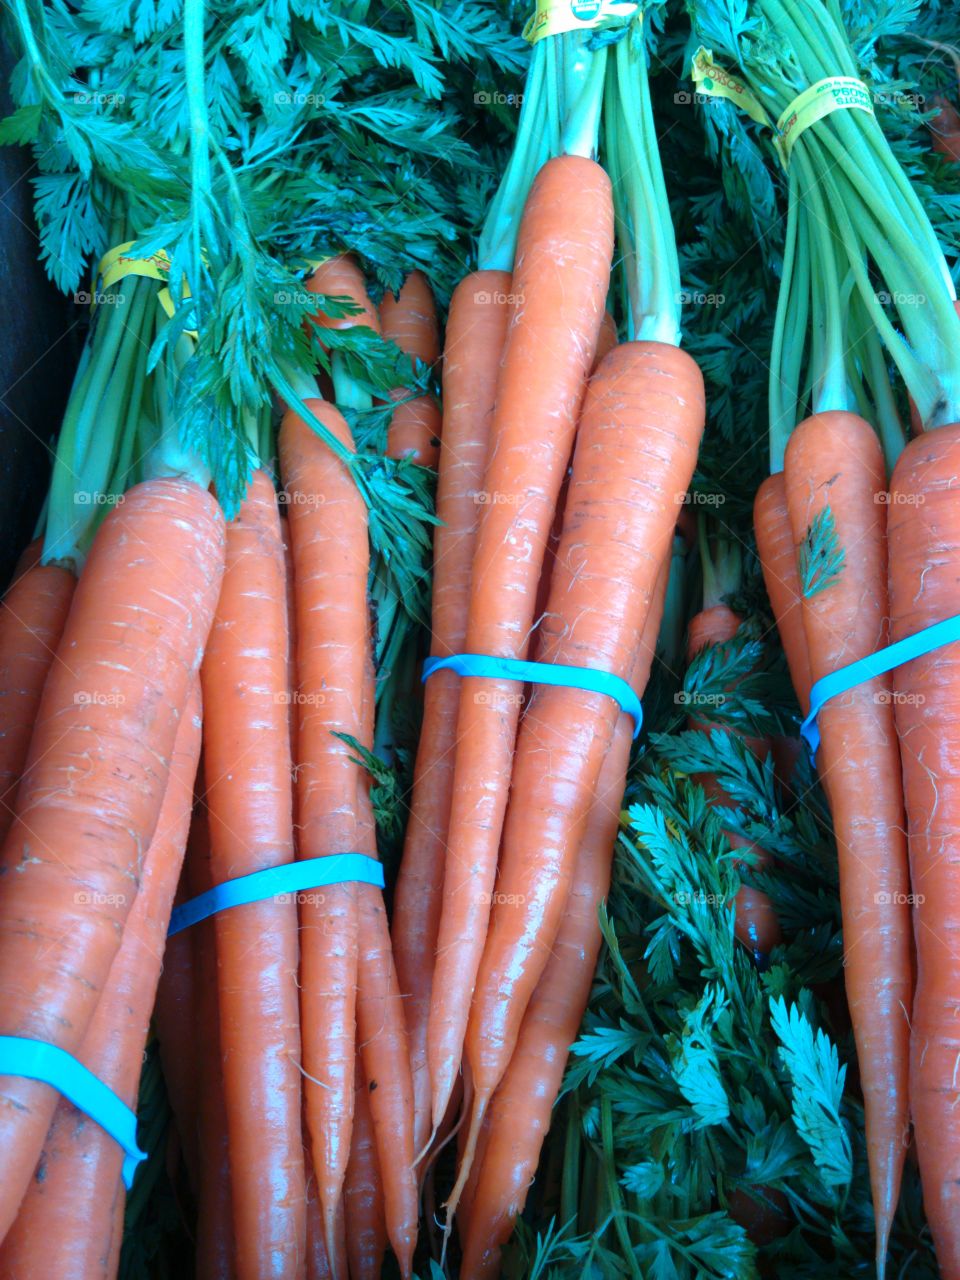 carrots. carrots